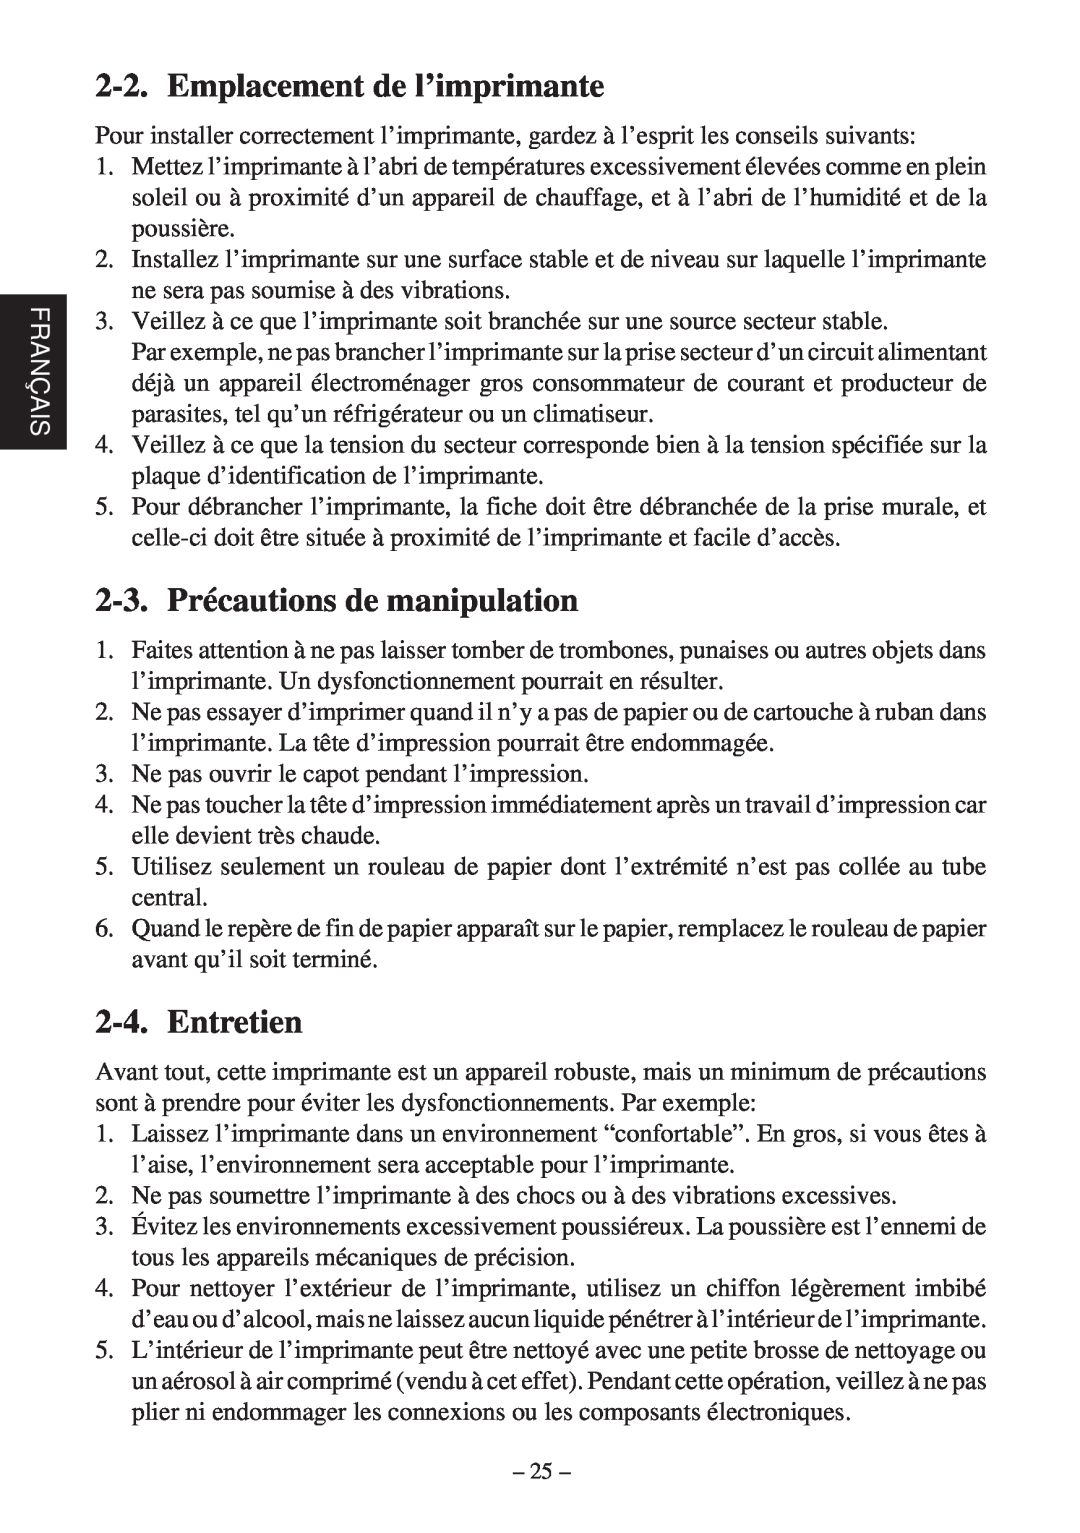 Star Micronics SP200F user manual Emplacement de l’imprimante, 2-3. Précautions de manipulation, Entretien, Français 